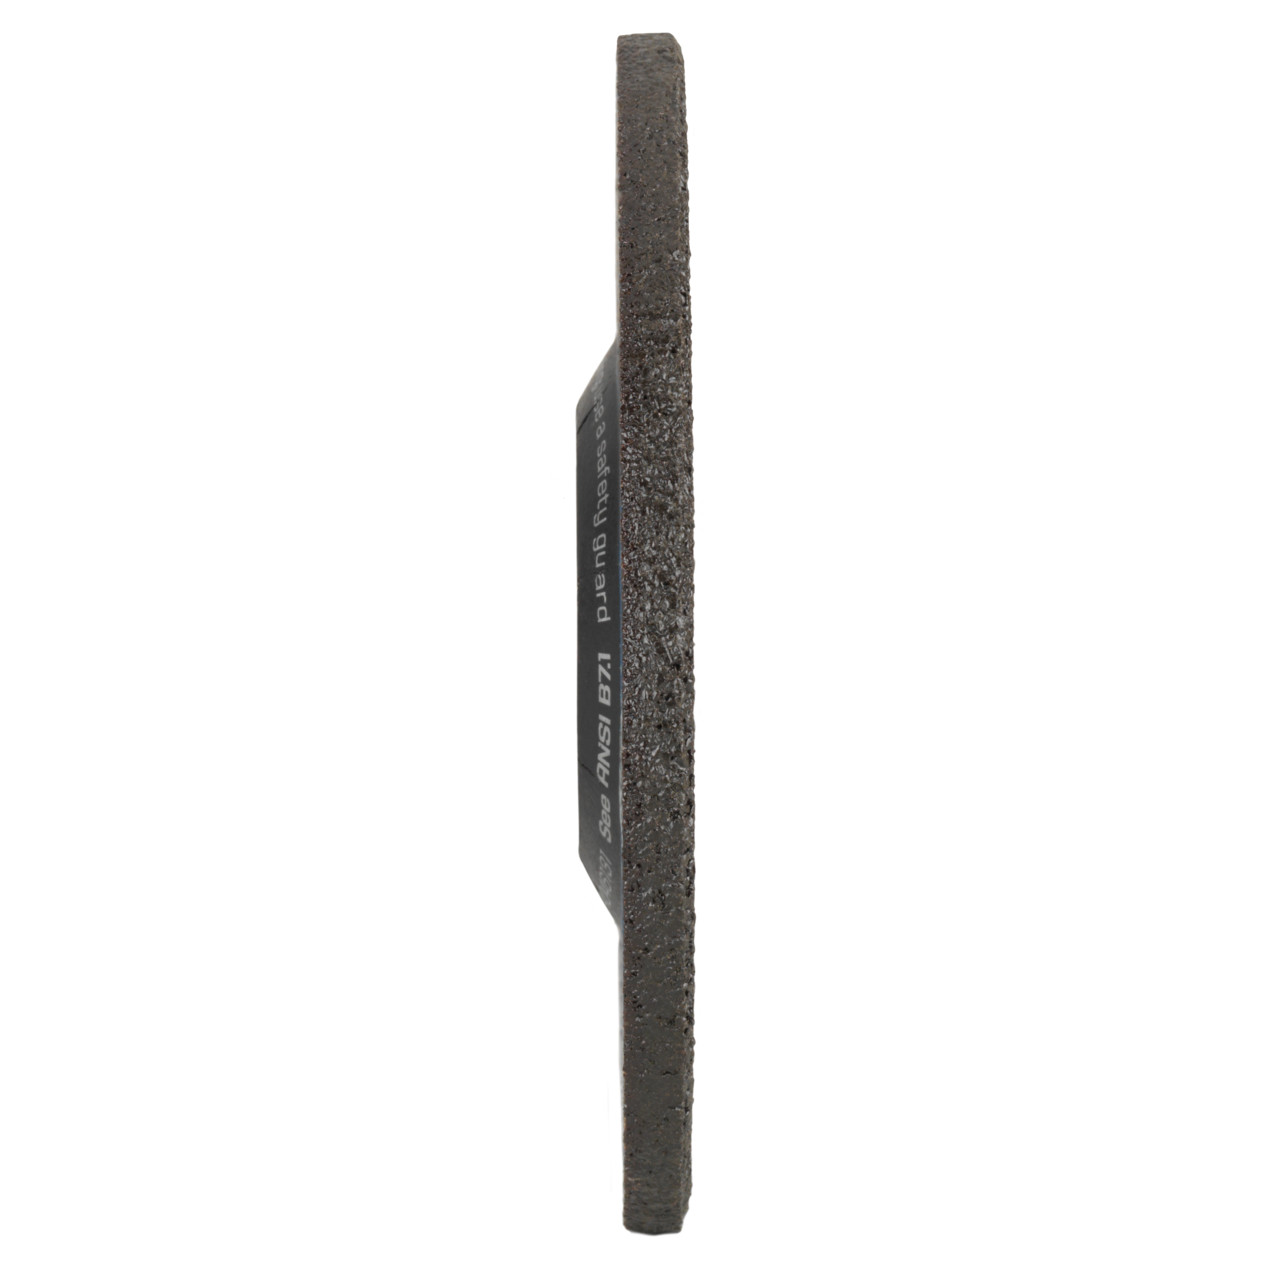 Tyrolit Voorslijpschijf DxUxH 230x8x22,23 2in1 voor staal en roestvast staal, vorm: 27 - offset uitvoering, Art. 34046136